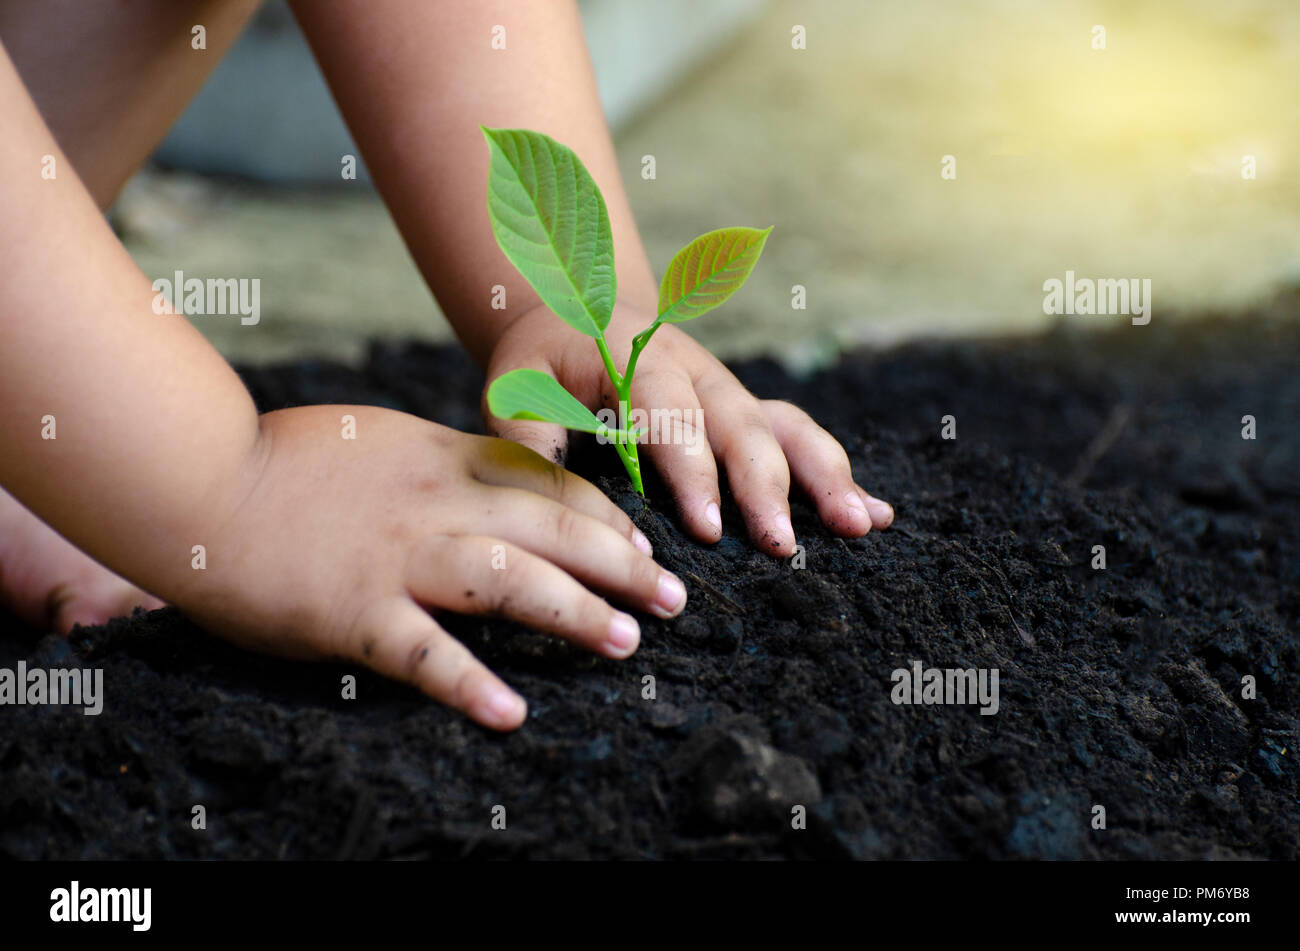 Baum sapling Baby Hand auf den dunklen Boden, das Konzept implantiert, das Bewusstsein der Kinder in die Umwelt. Stockfoto